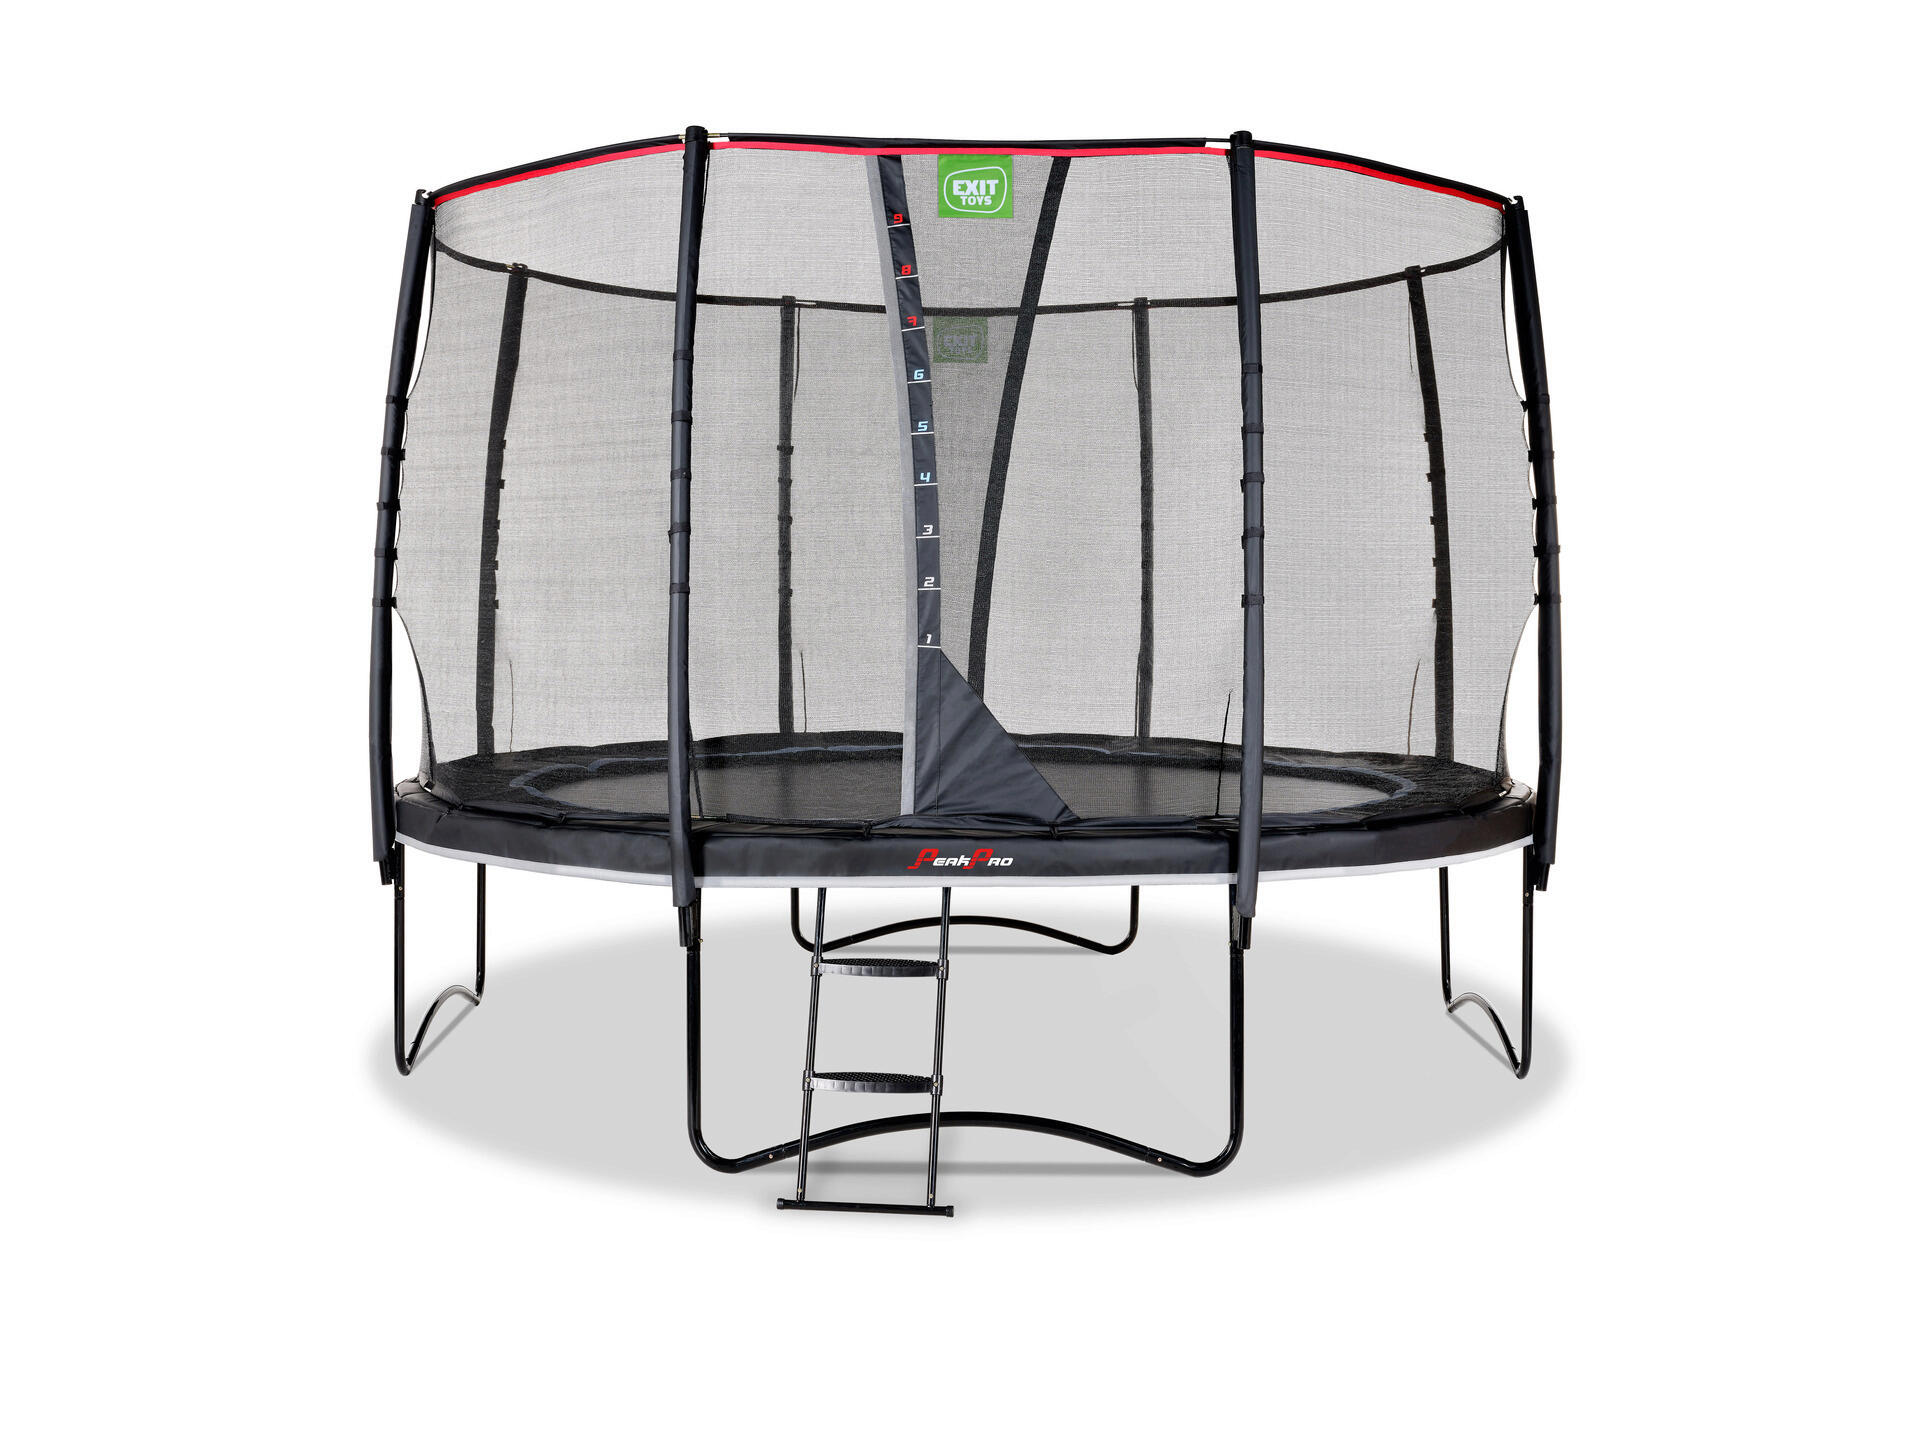 Exit Toys PeakPro trampoline 366cm + filet de sécurité noir